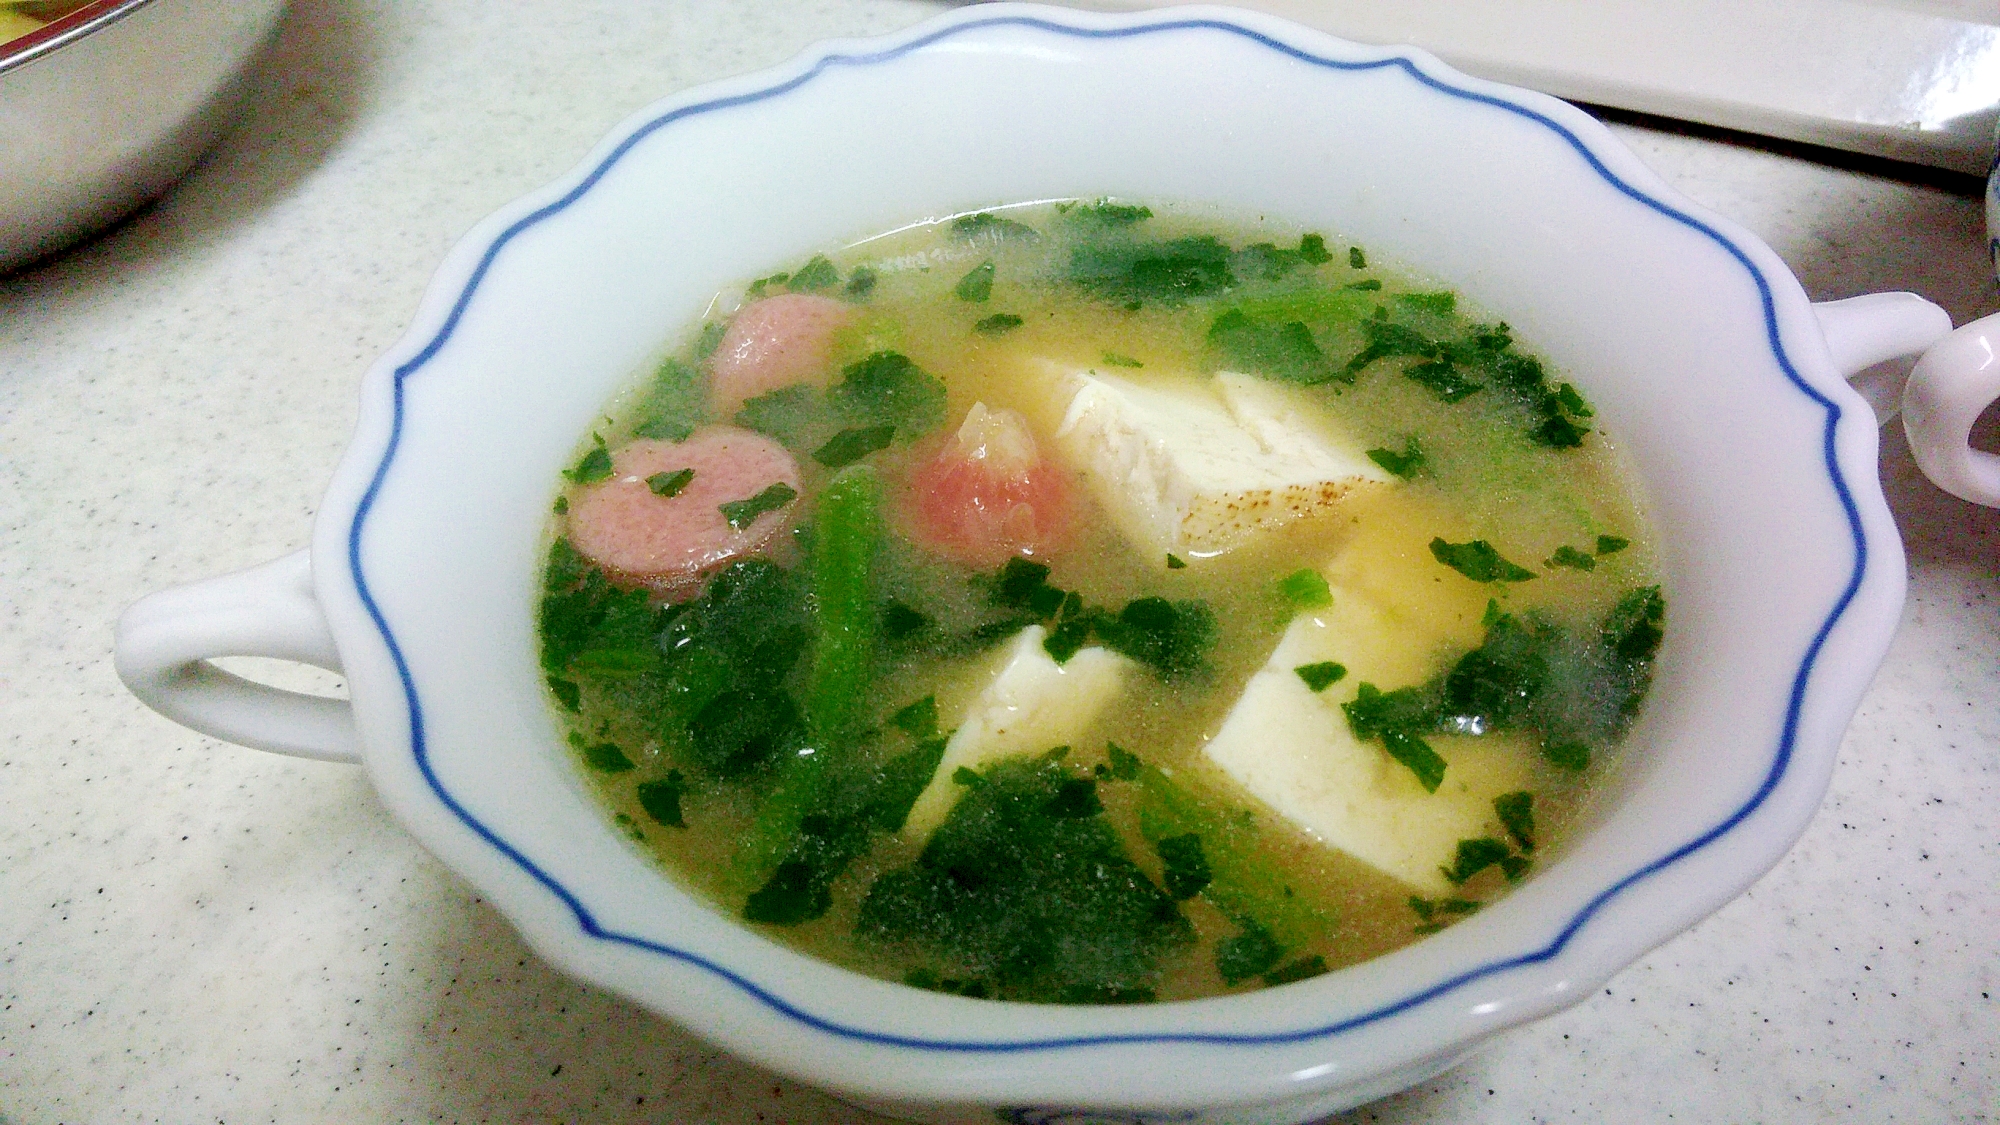 焼き豆腐とほうれん草、ウインナーの中華風味噌スープ